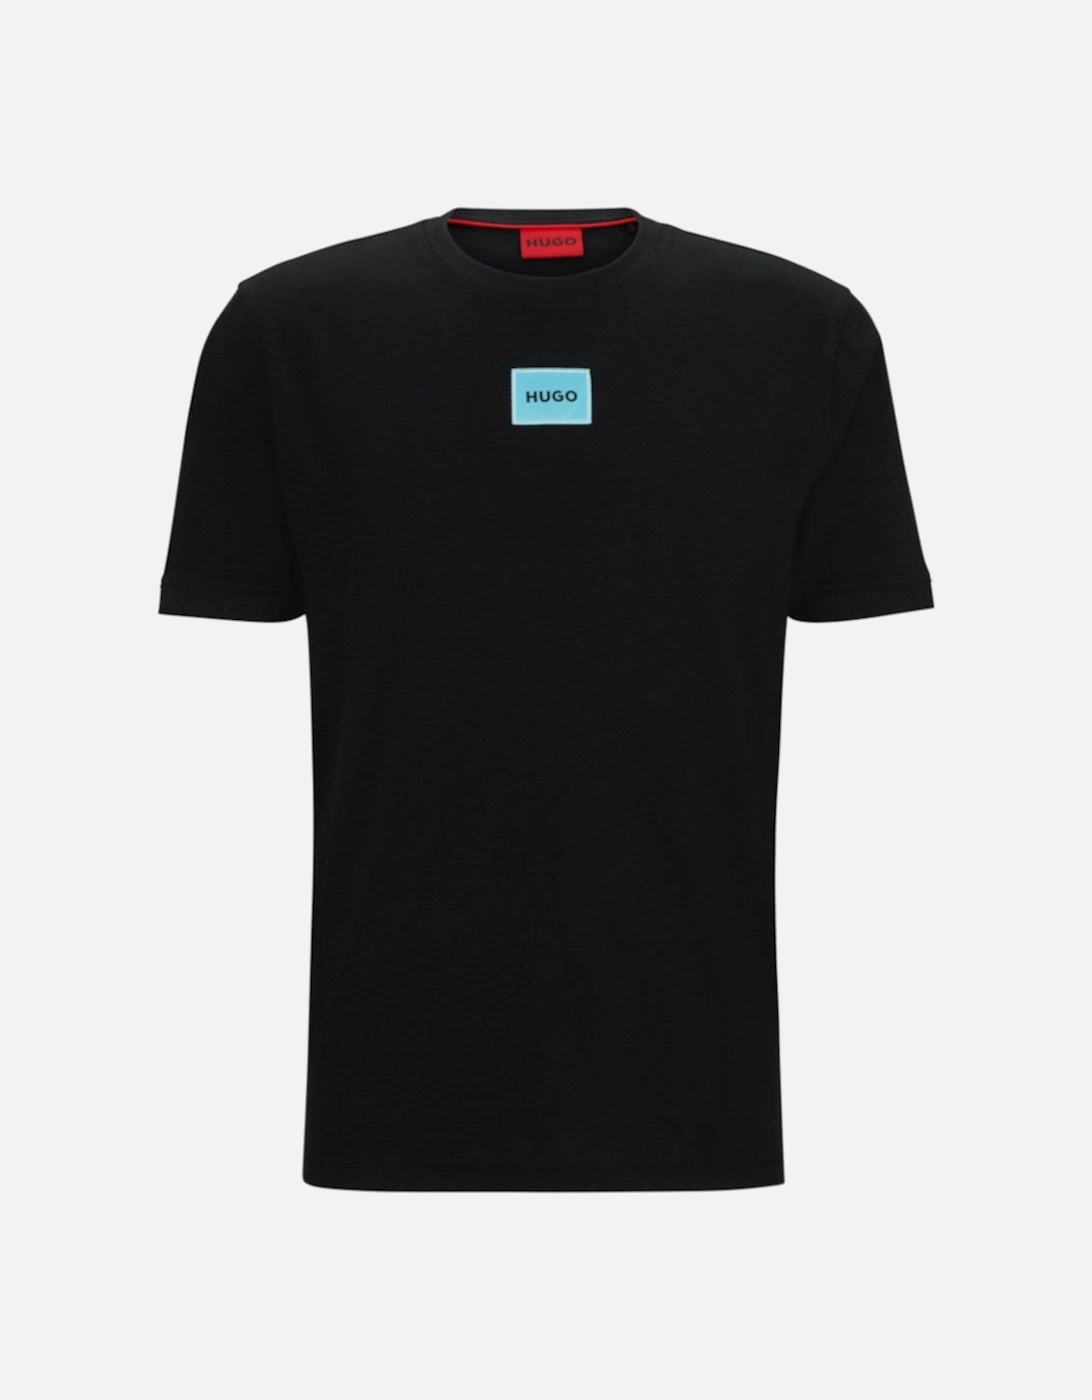 Diragolino212 T-Shirt 10229761 009 Black